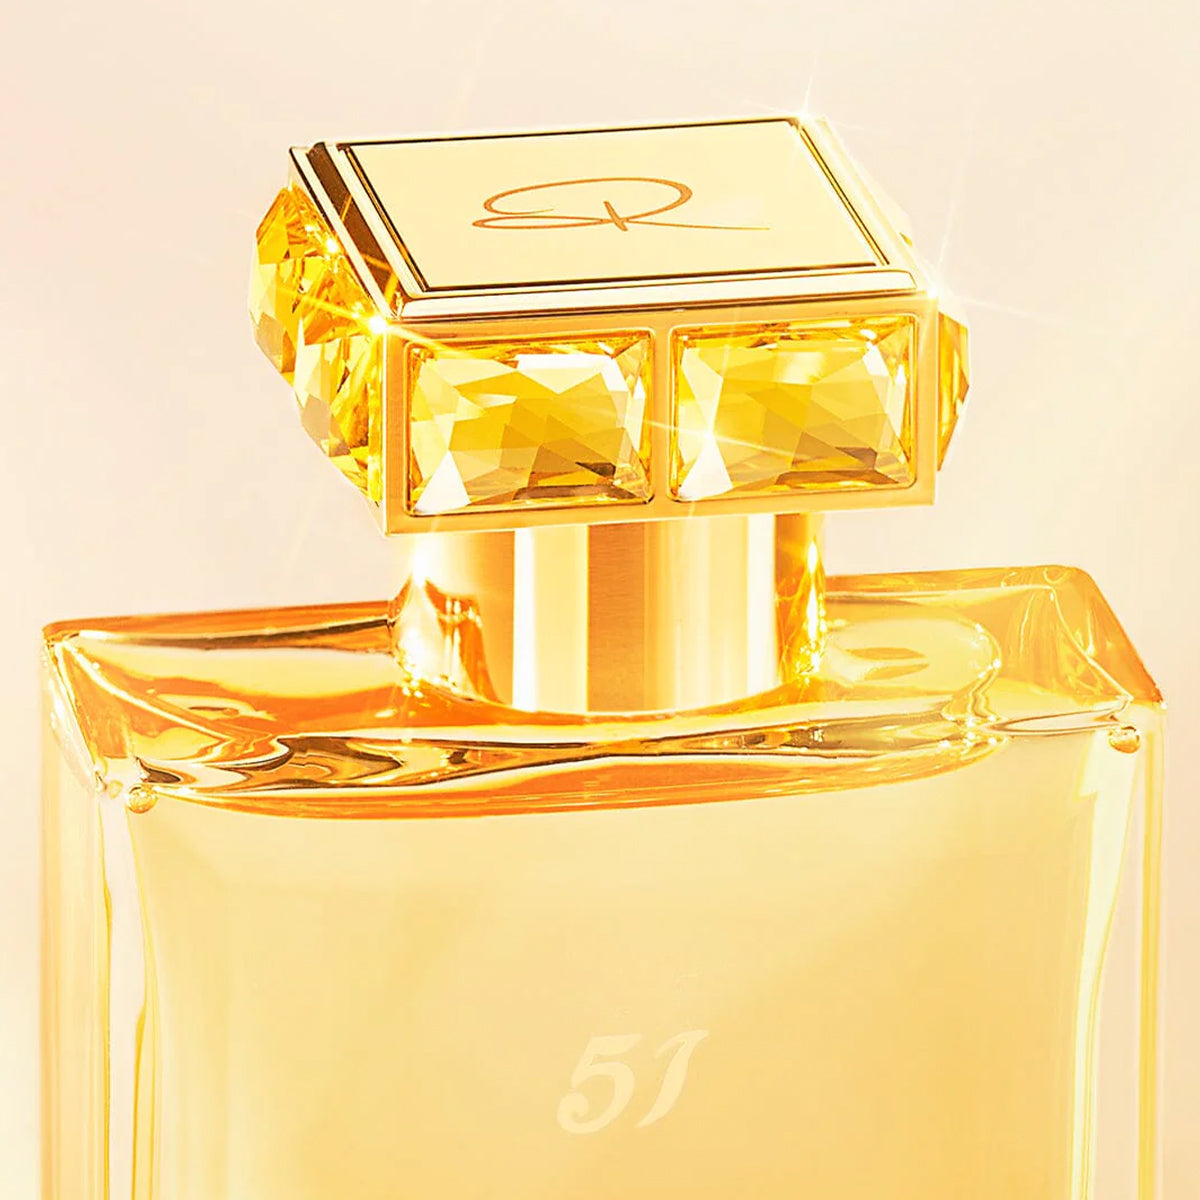 51 Pour Femme - Roja  Parfums - EDP 75 ml